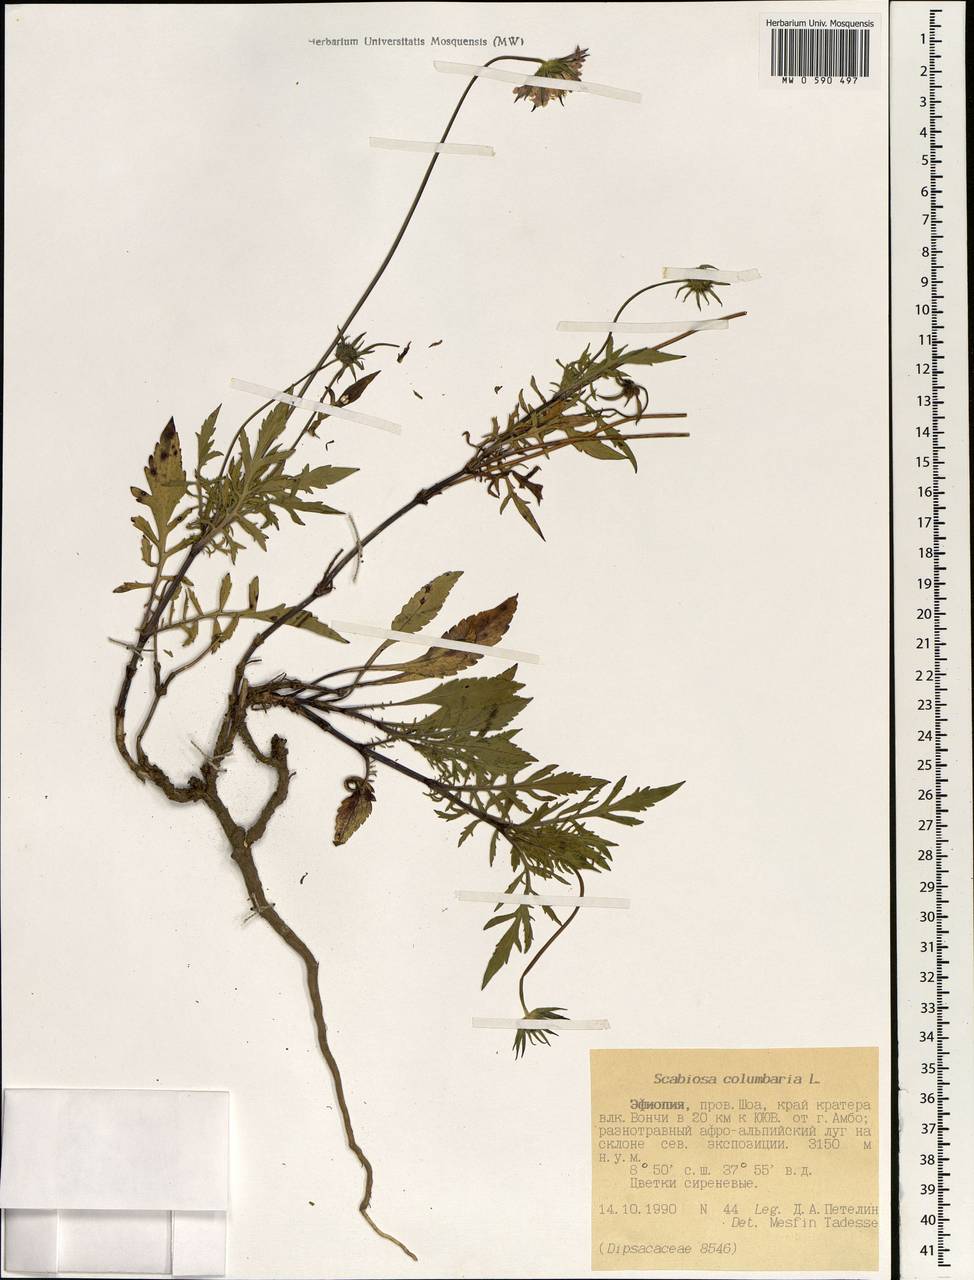 Scabiosa columbaria L., Africa (AFR) (Ethiopia)